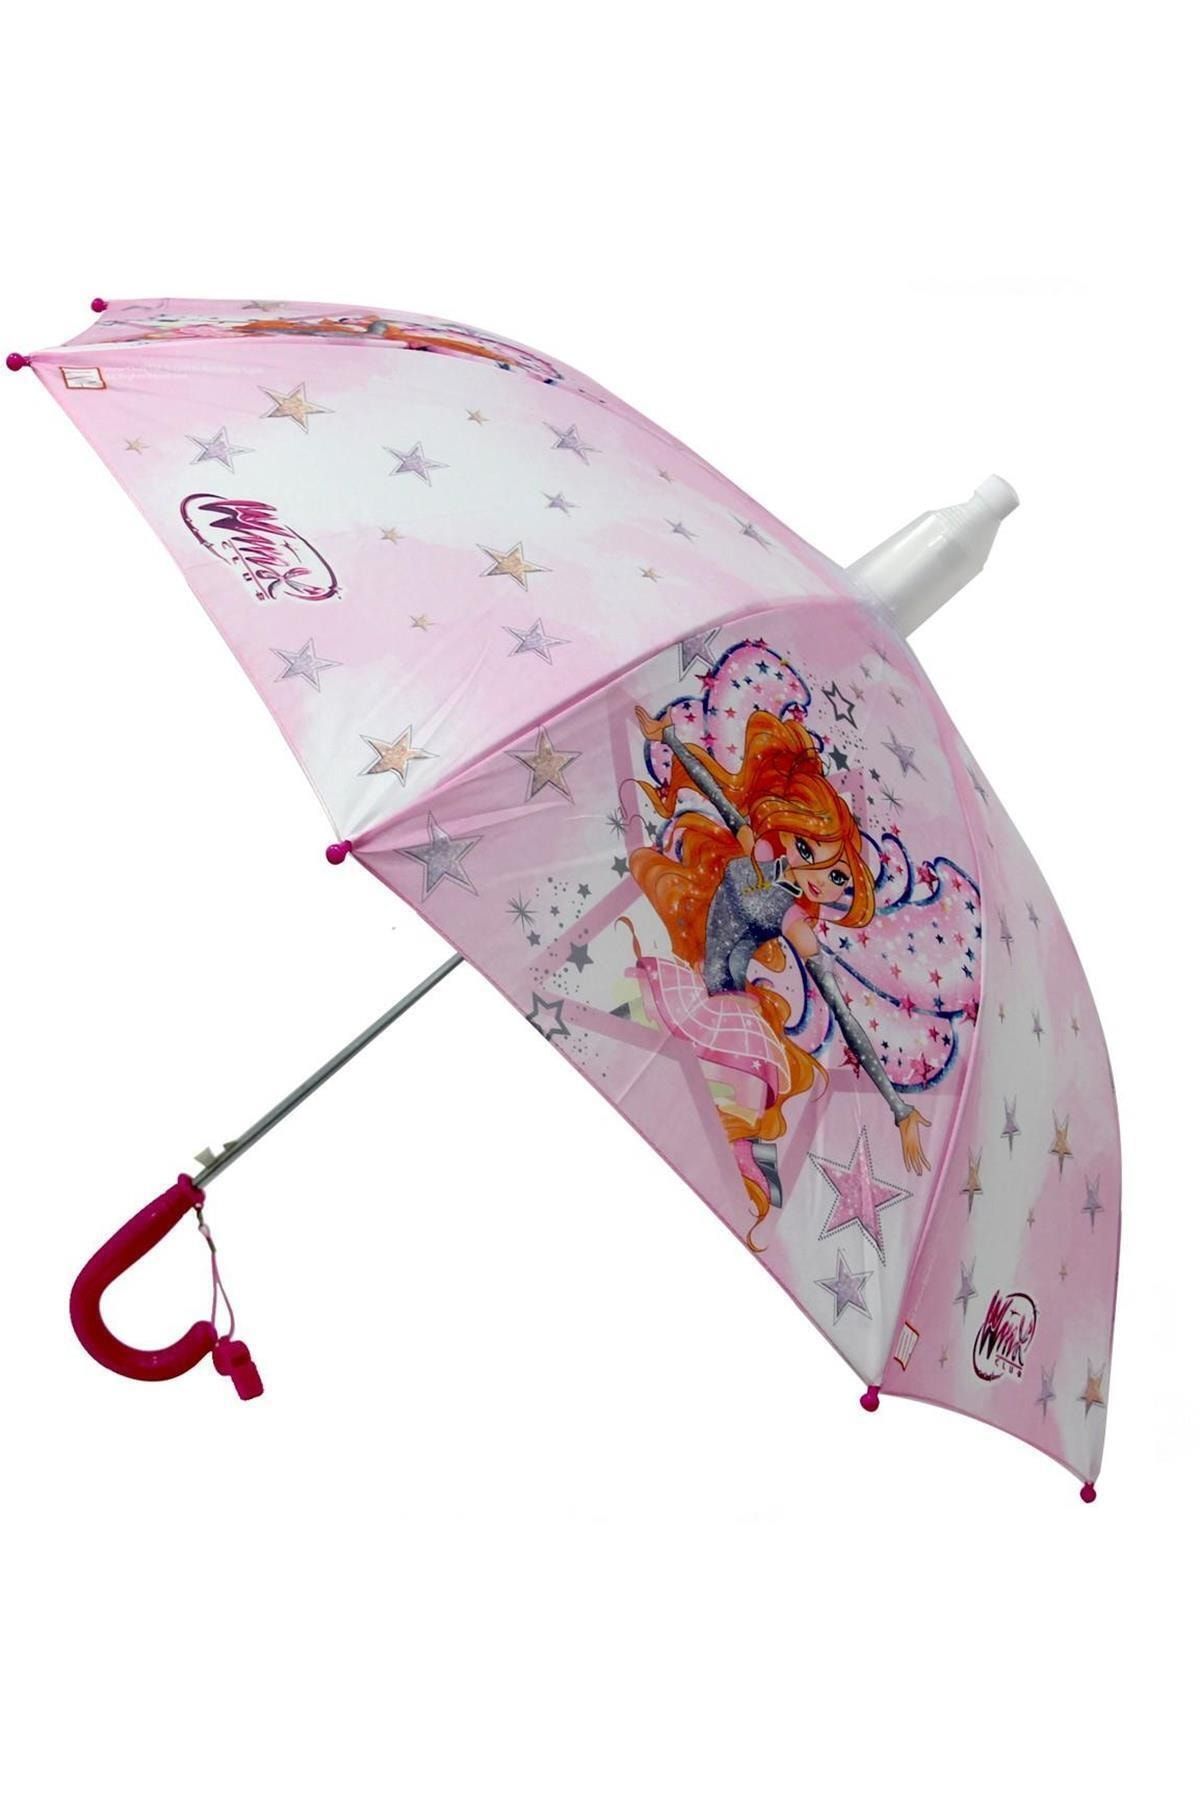 Genel Markalar Marka: Rubenıs Winx Lisanslı Çocuk Şemsiyesi Kategori: Bebek & Aktivite Oyuncakları